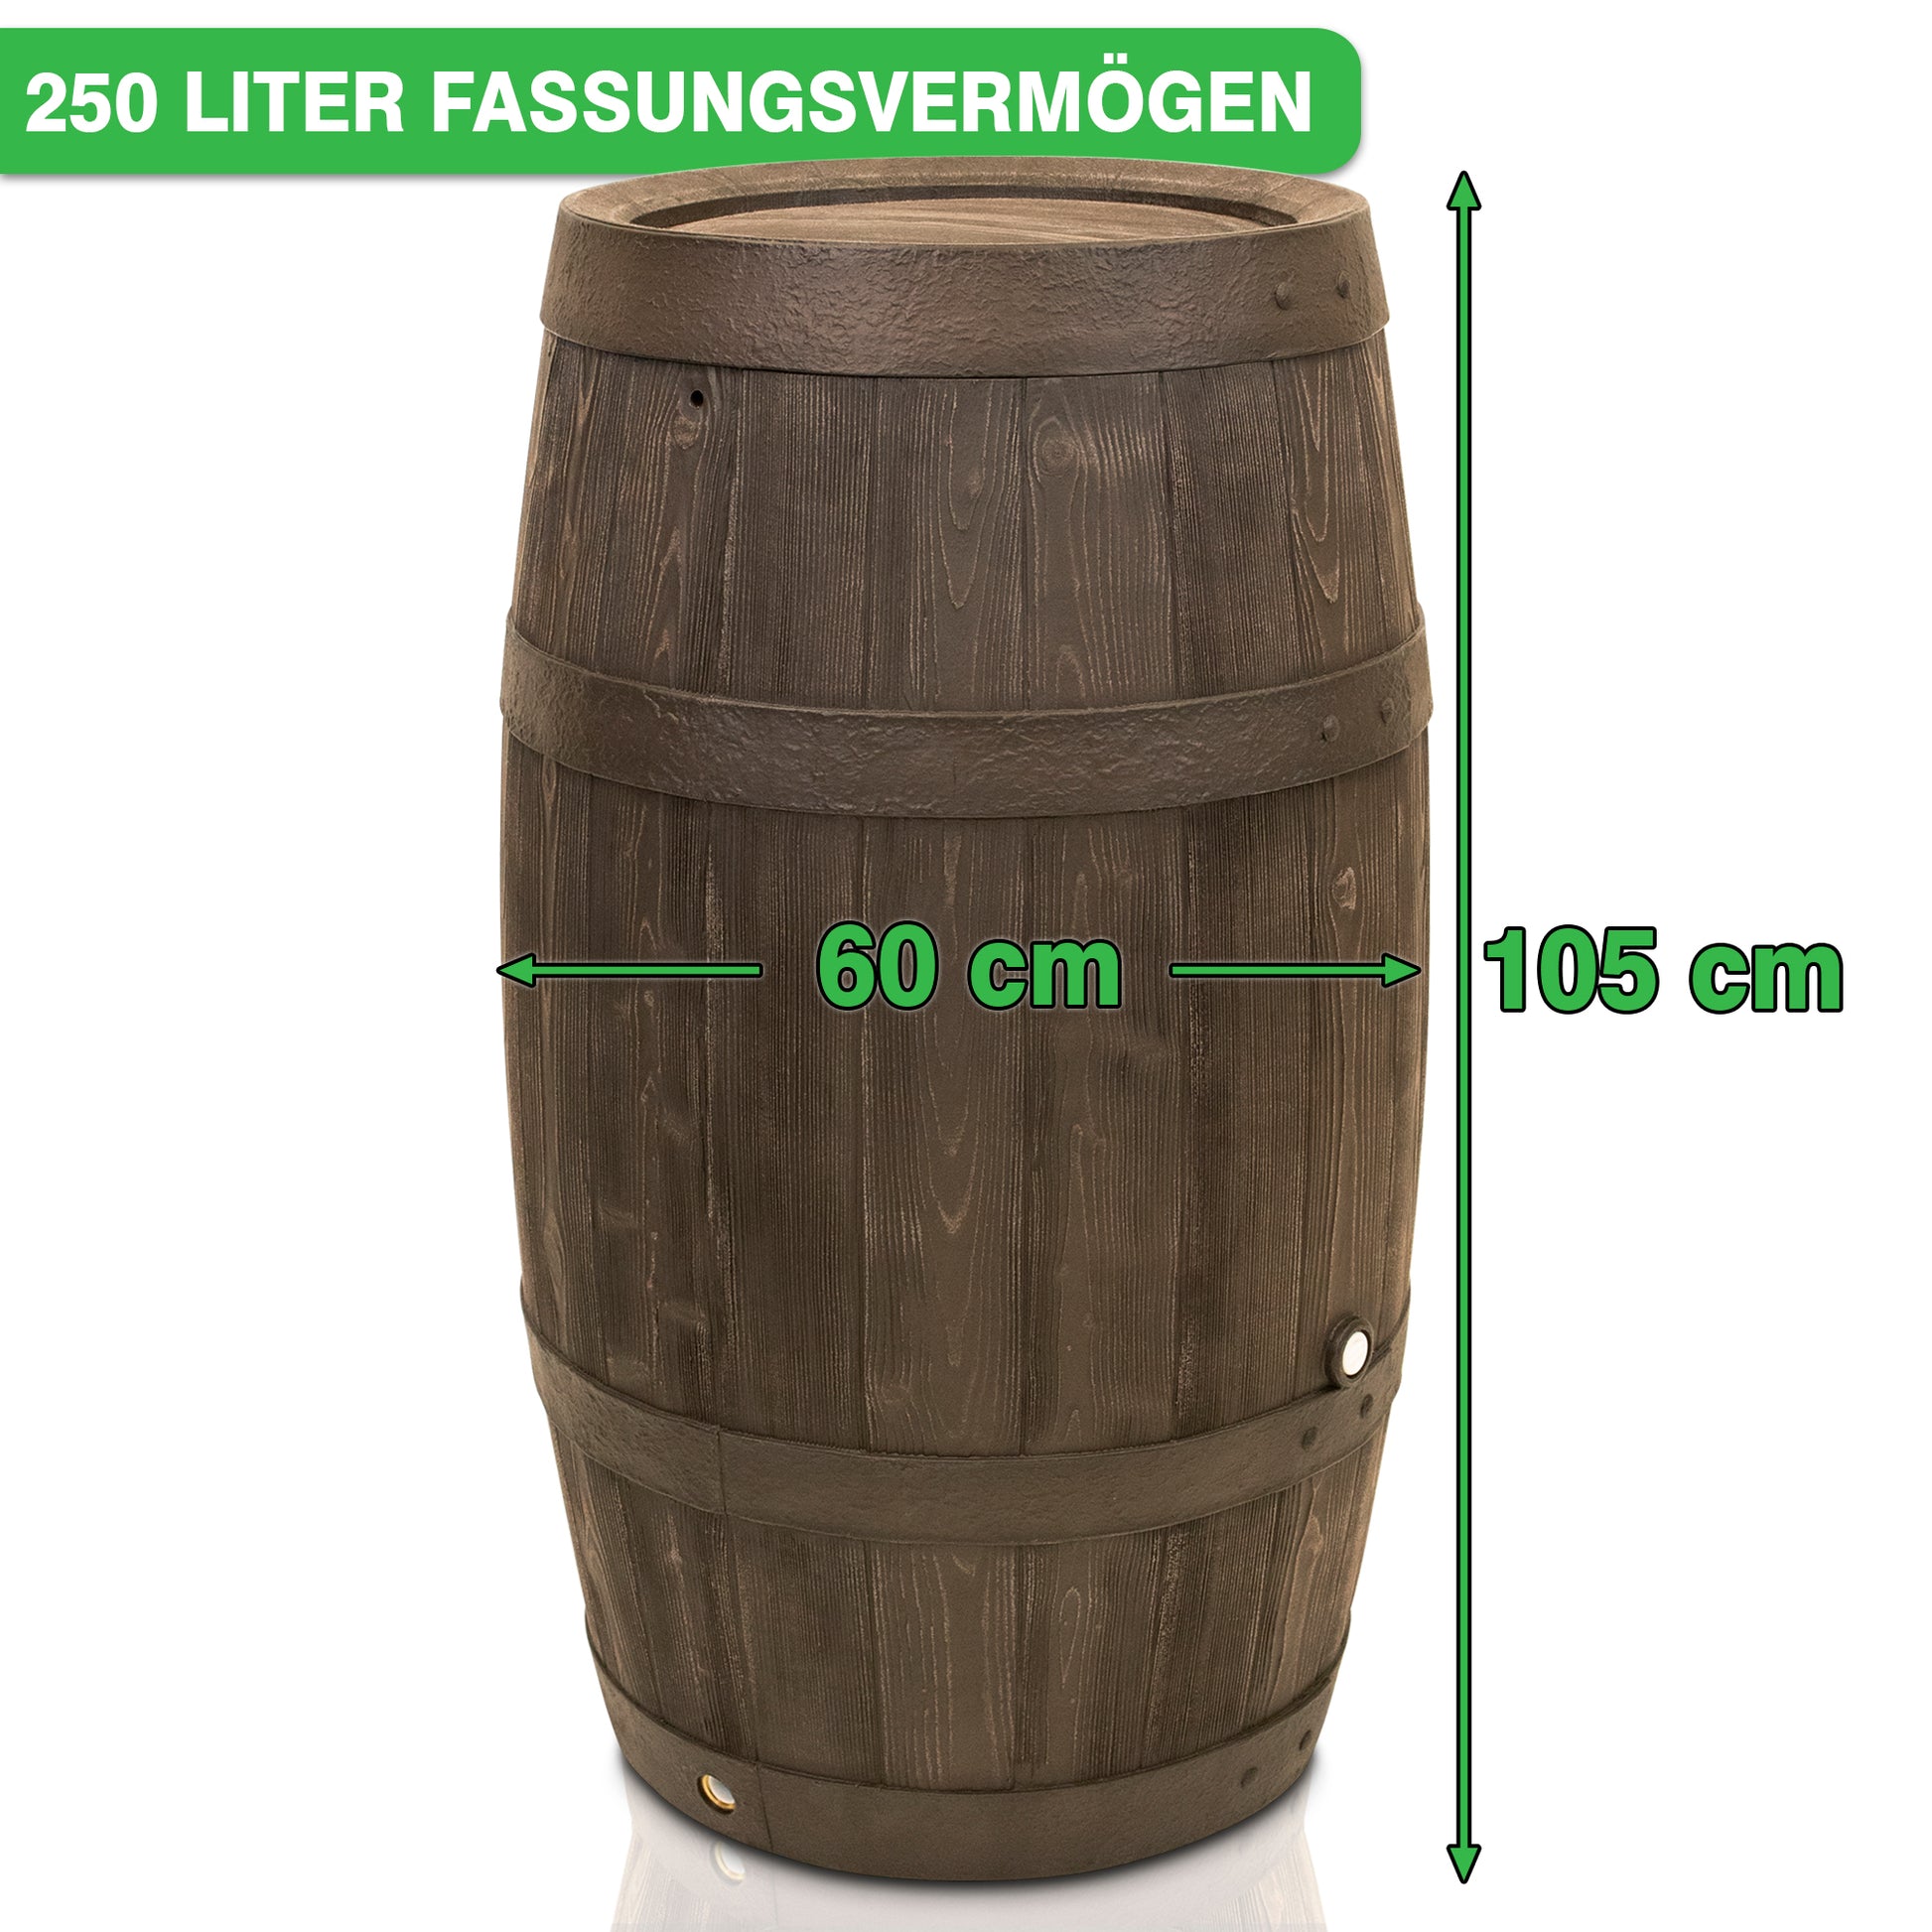 YourCasa Regentonne 250 Liter [Holz] - Frostsicher & UV-beständig von yourcasa-de, konzipiert als UV-beständiger Regenwasserbehälter.